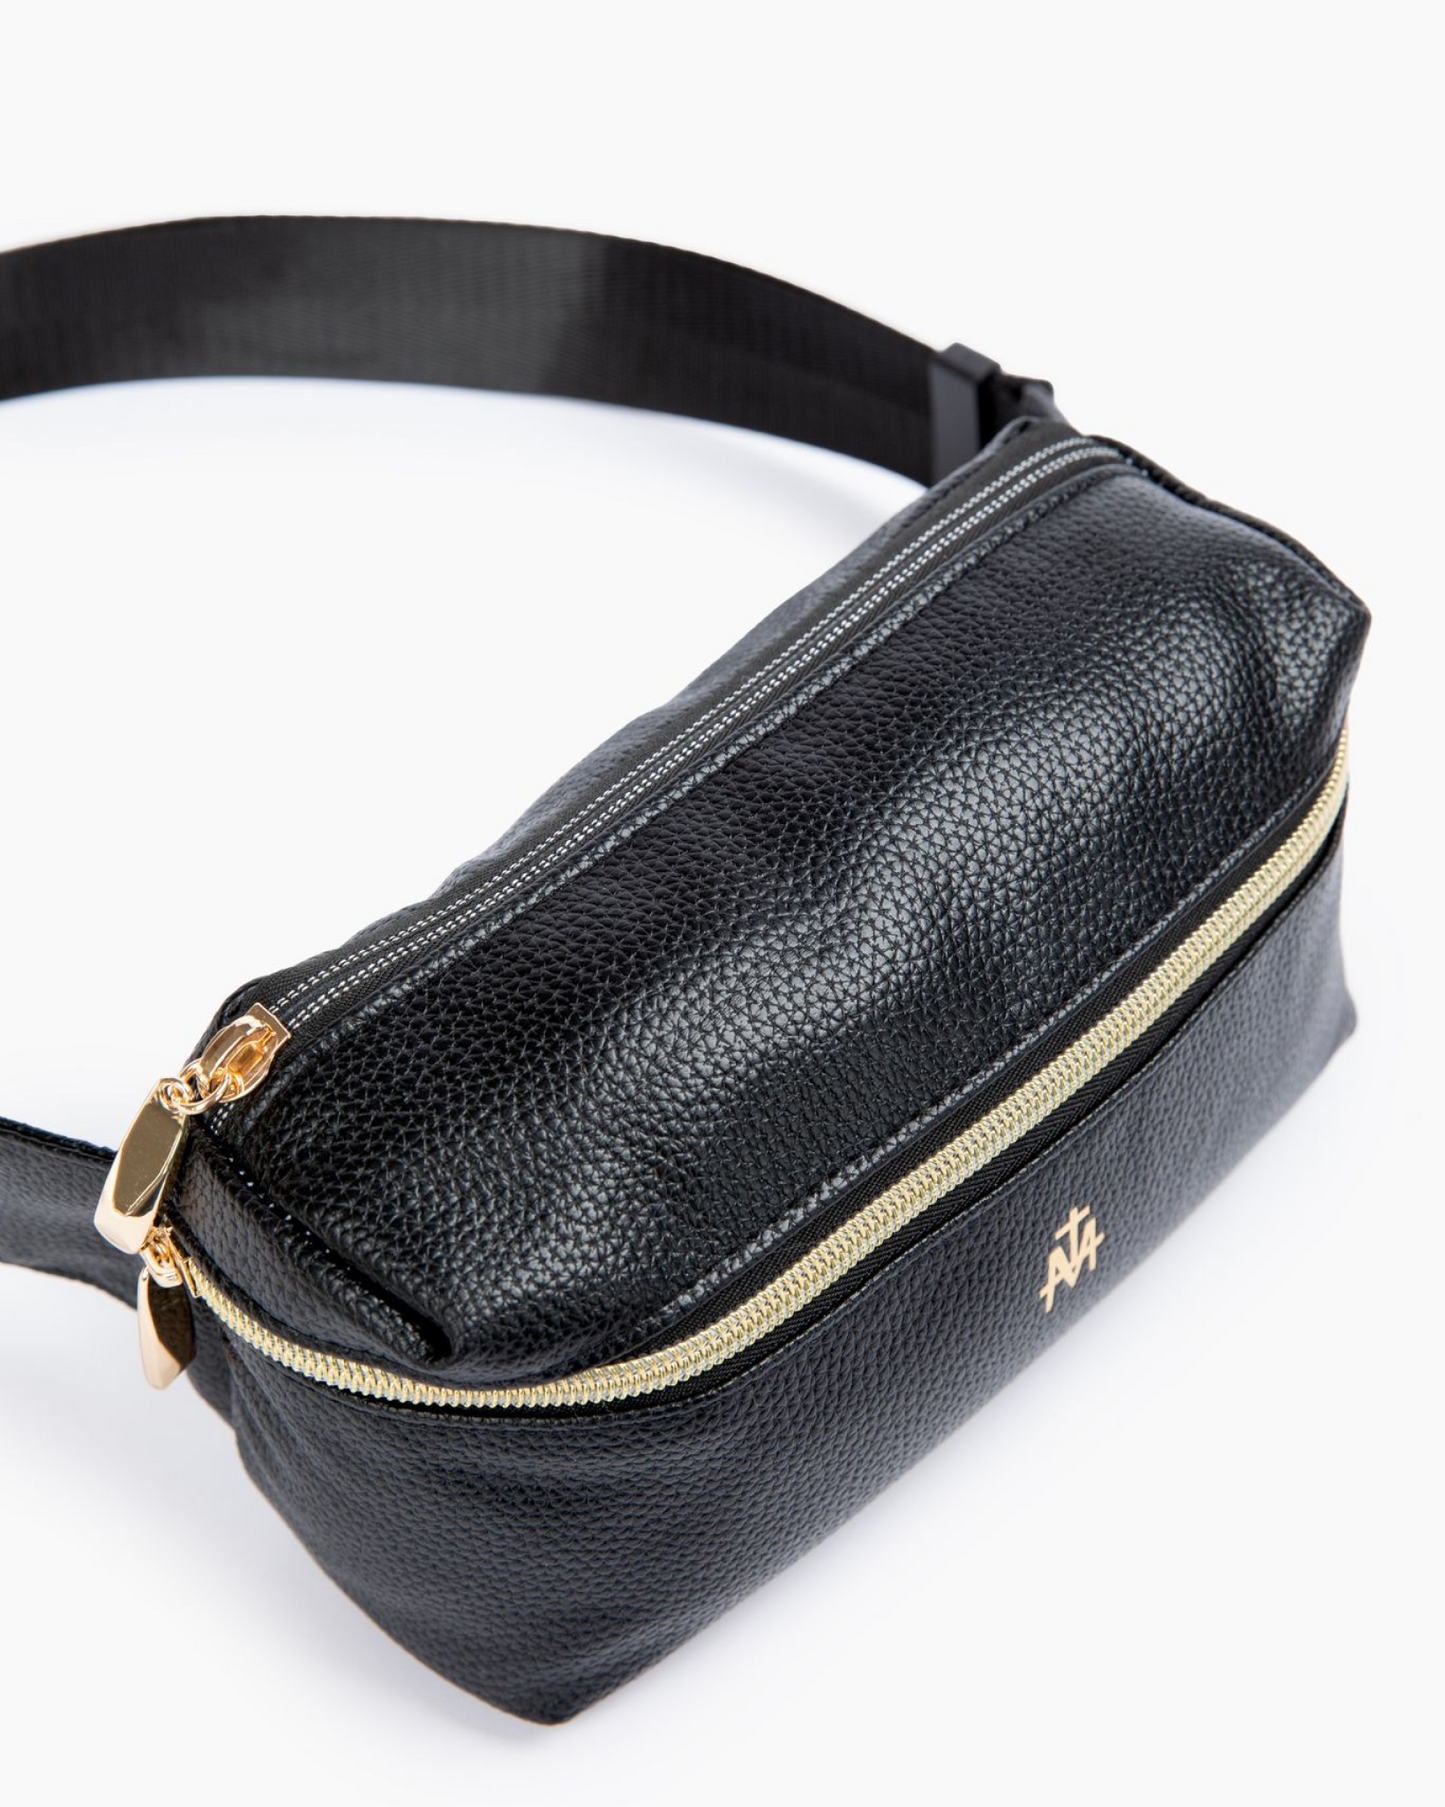 C.C. Belt Bag – Best Life Boutique